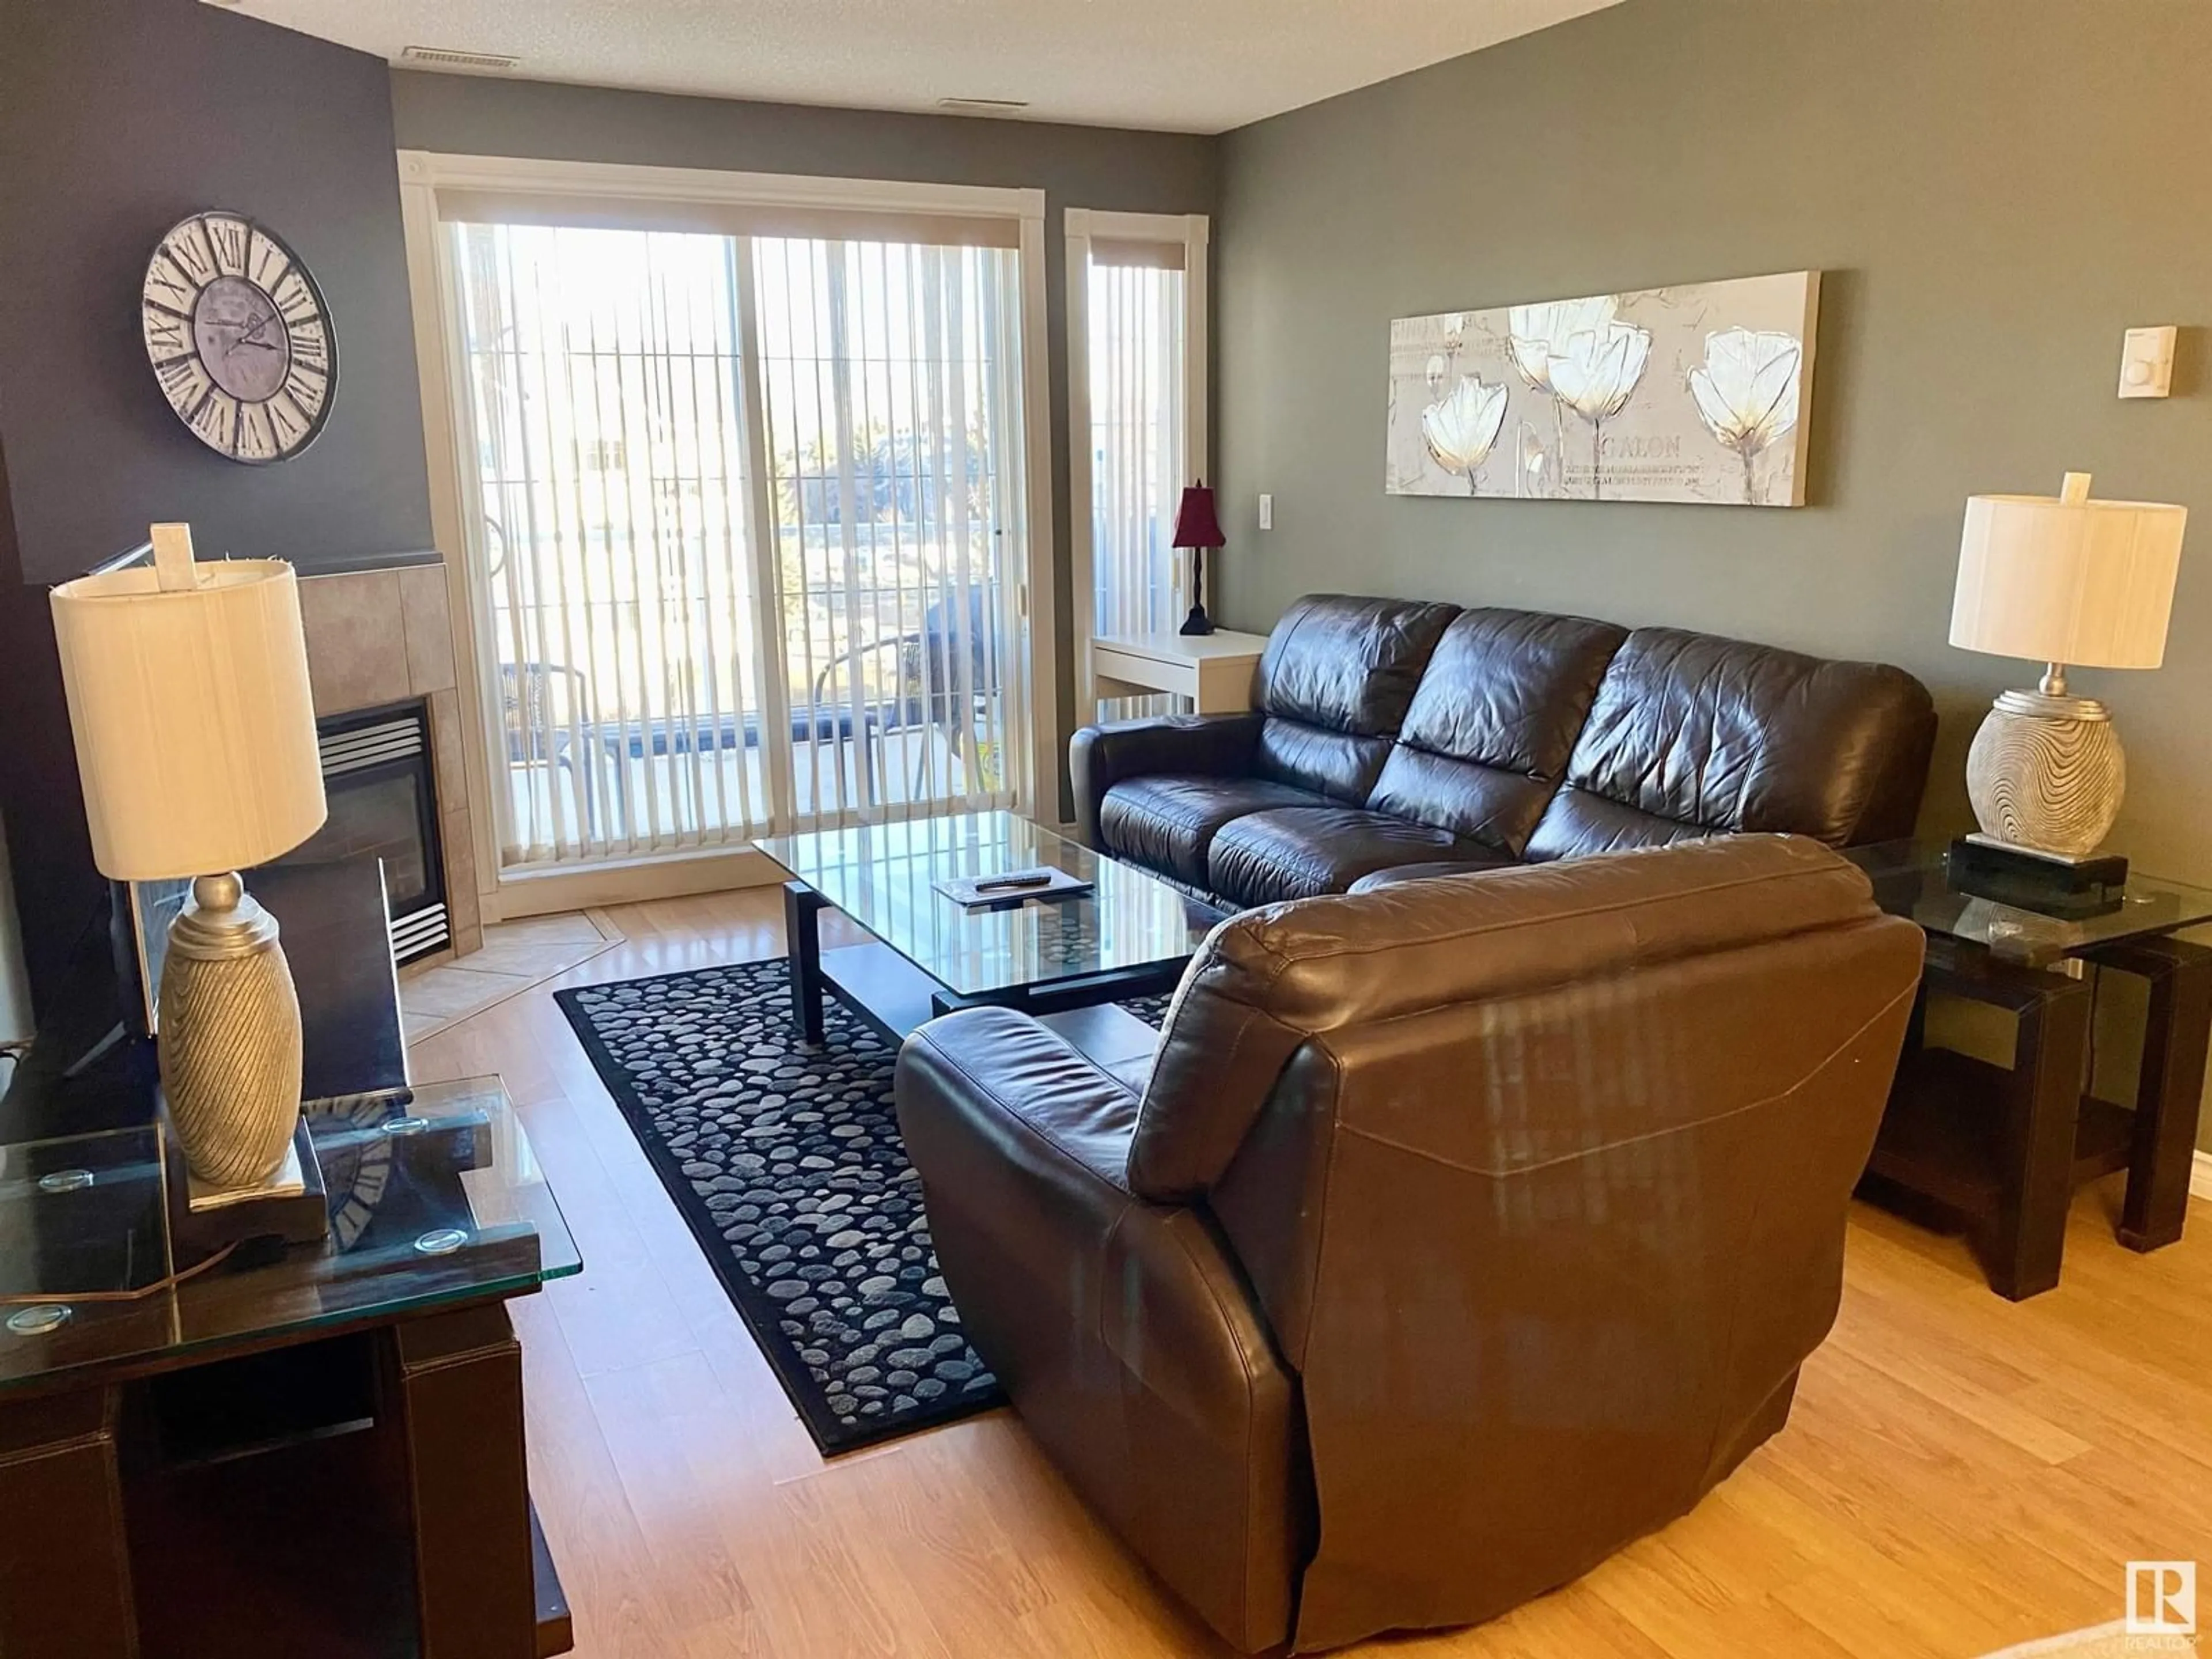 Living room for #405 12110 106 AV NW, Edmonton Alberta T5N4R9